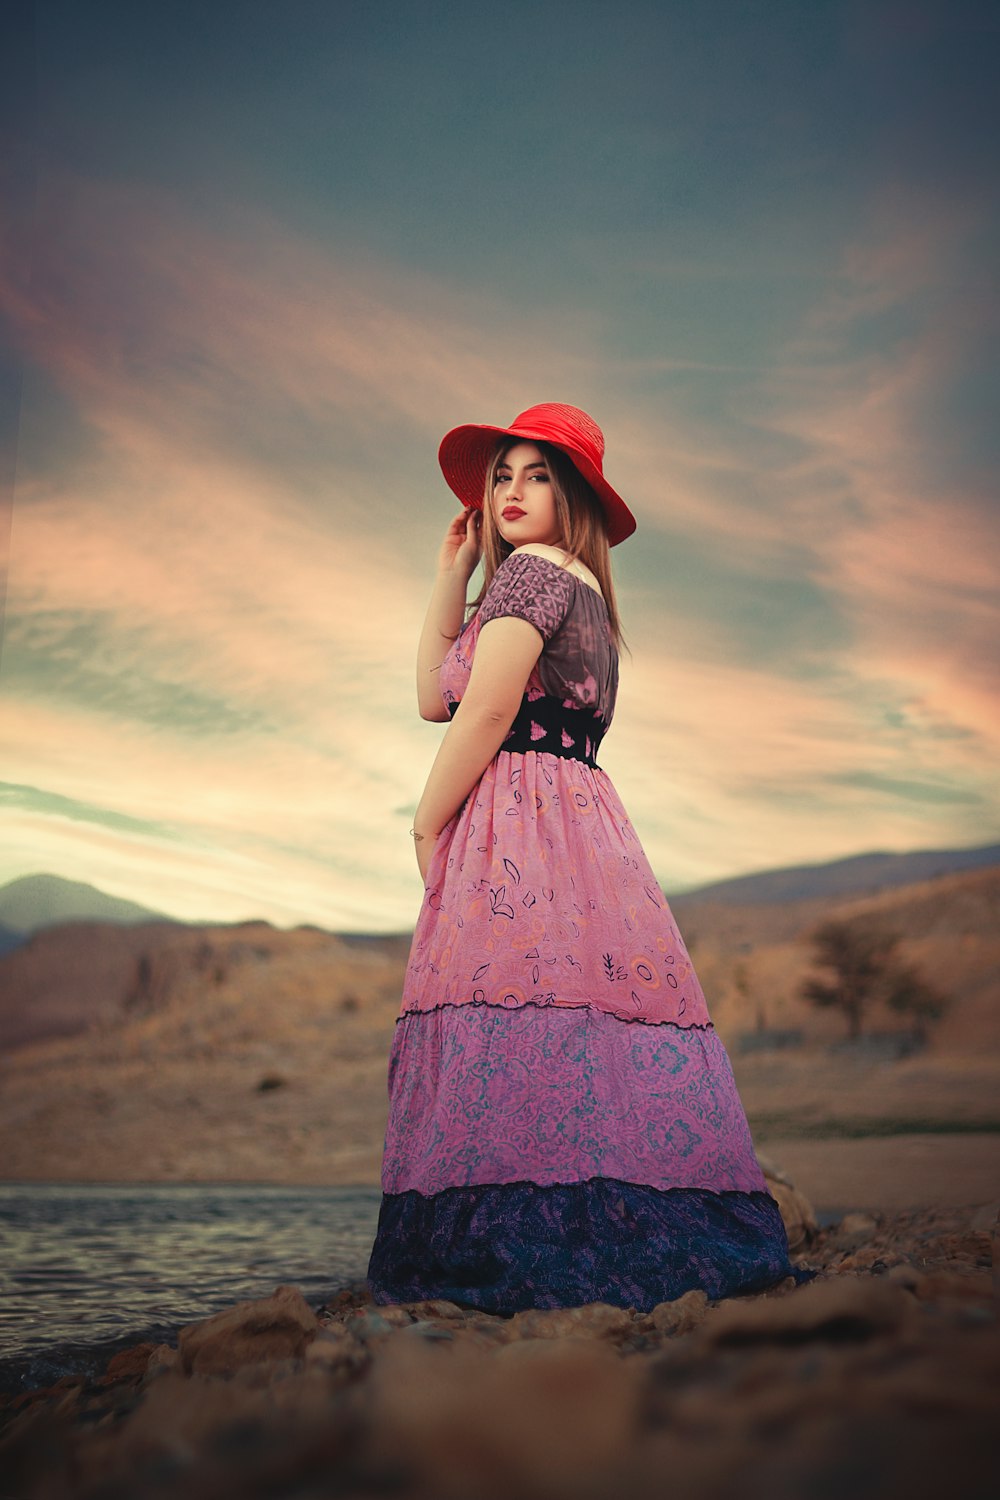 夕暮れ時に茶色の野原に立つ赤い帽子と黒と白のドレスを着た女性